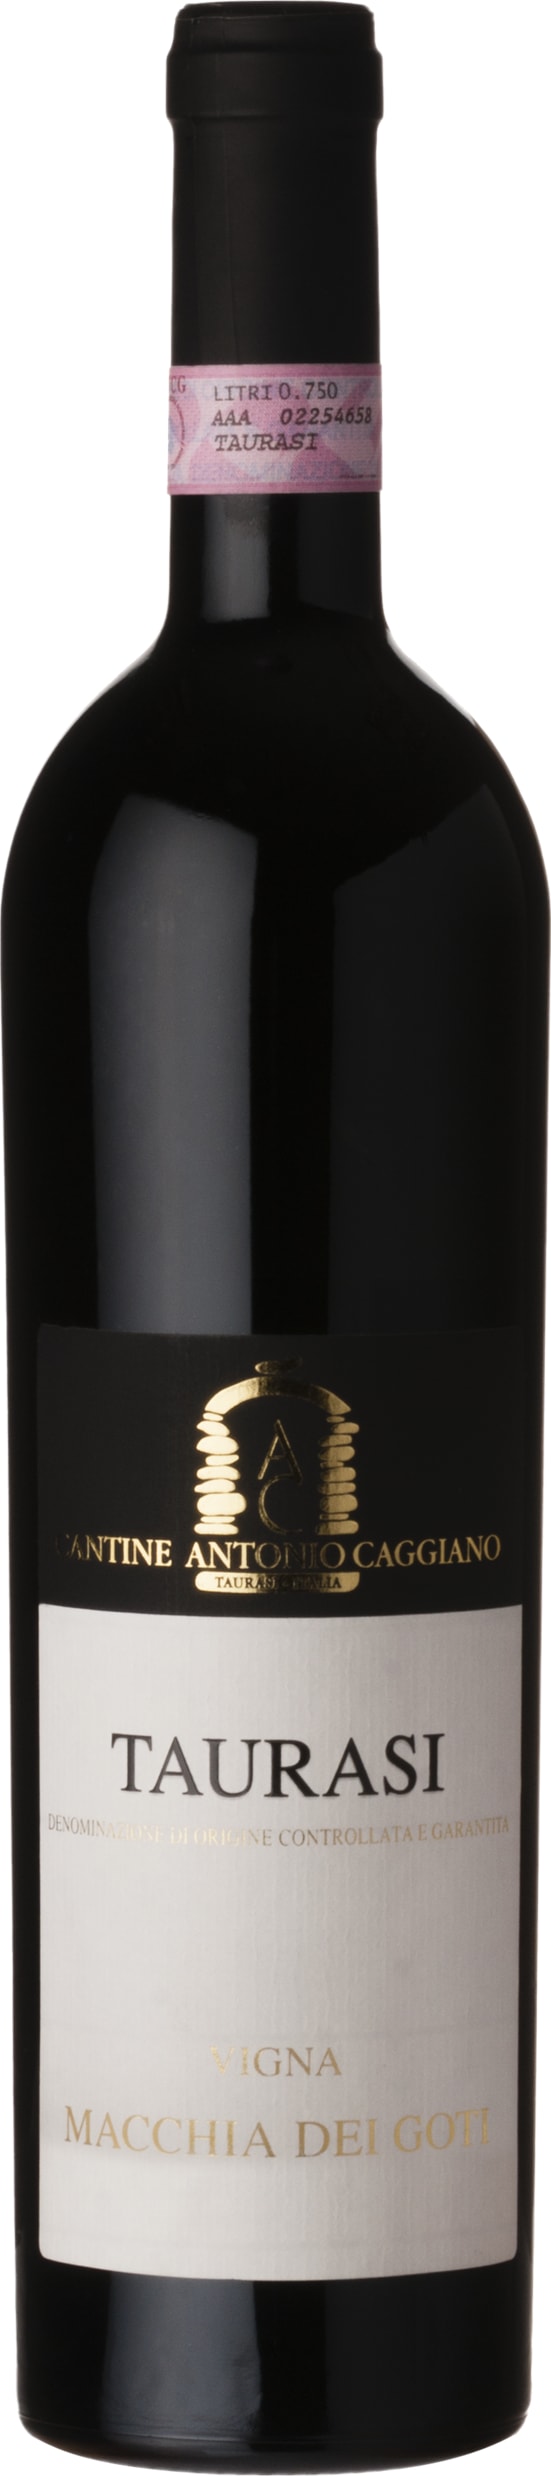 Antonio Caggiano Taurasi DOCG Vigna Macchia dei Goti 2019 75cl - Buy Antonio Caggiano Wines from GREAT WINES DIRECT wine shop